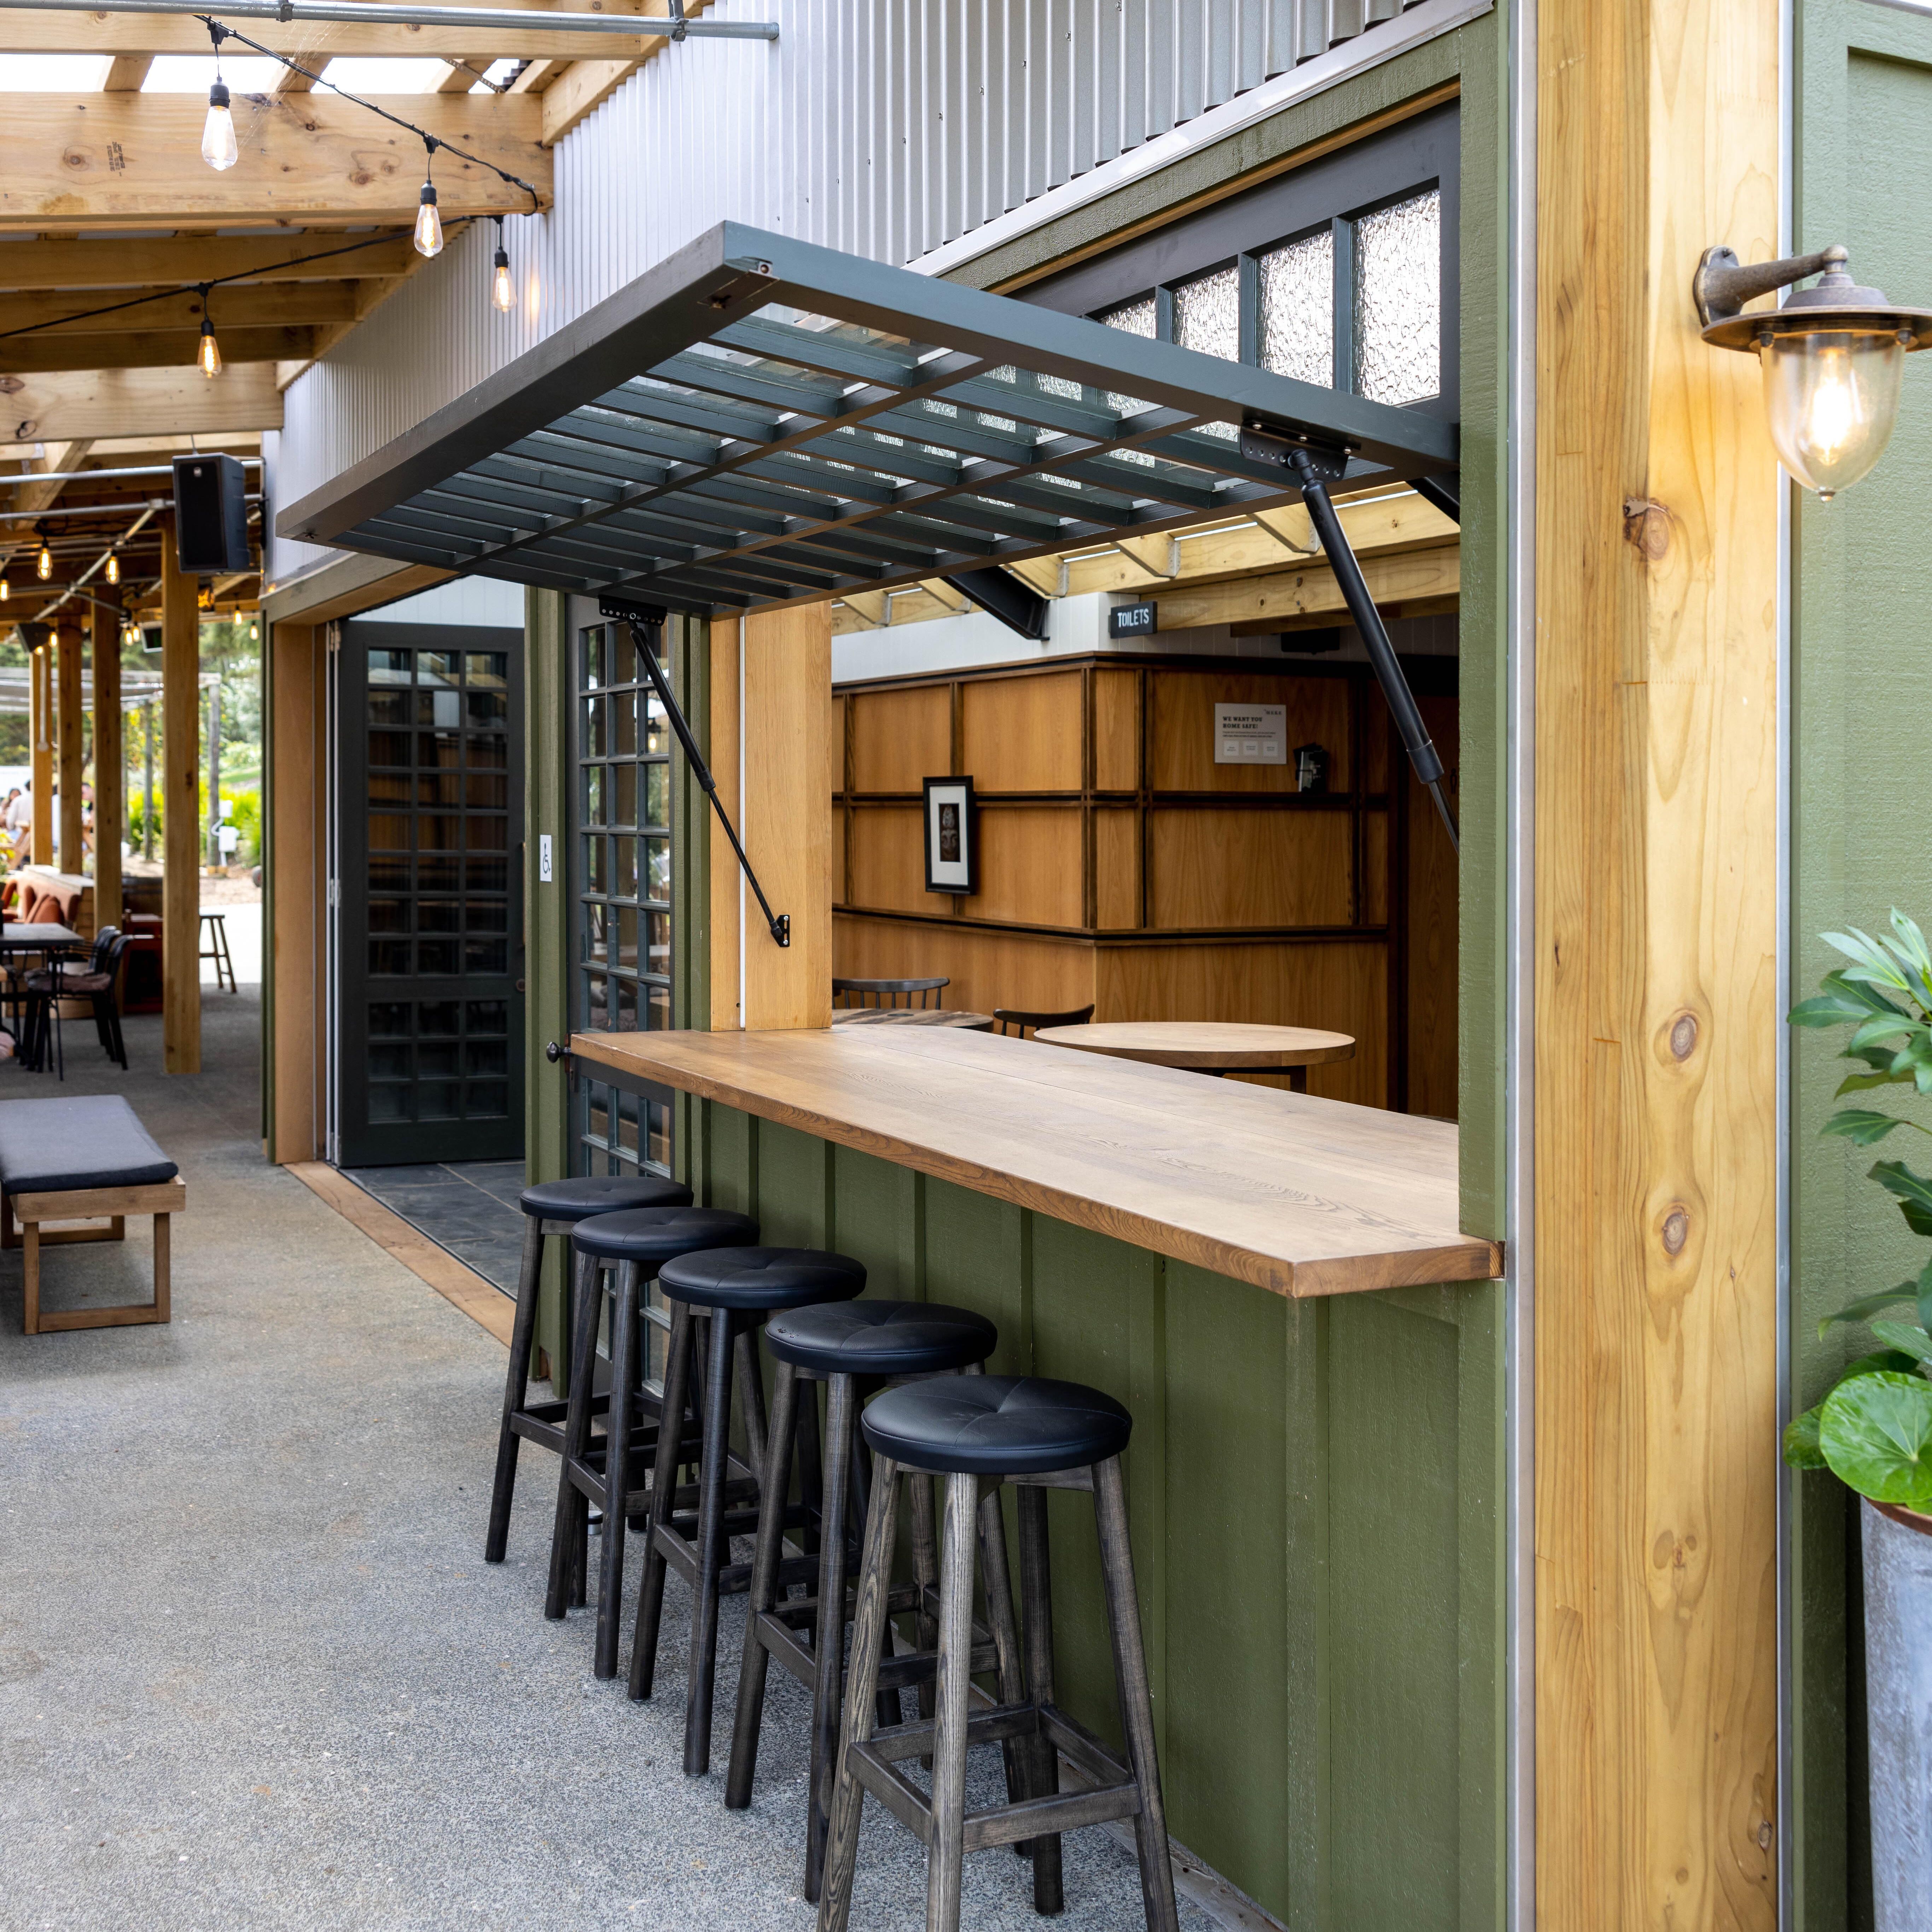 The Heke Kitchen, Garden Bar & Restaurant designed by Izzard